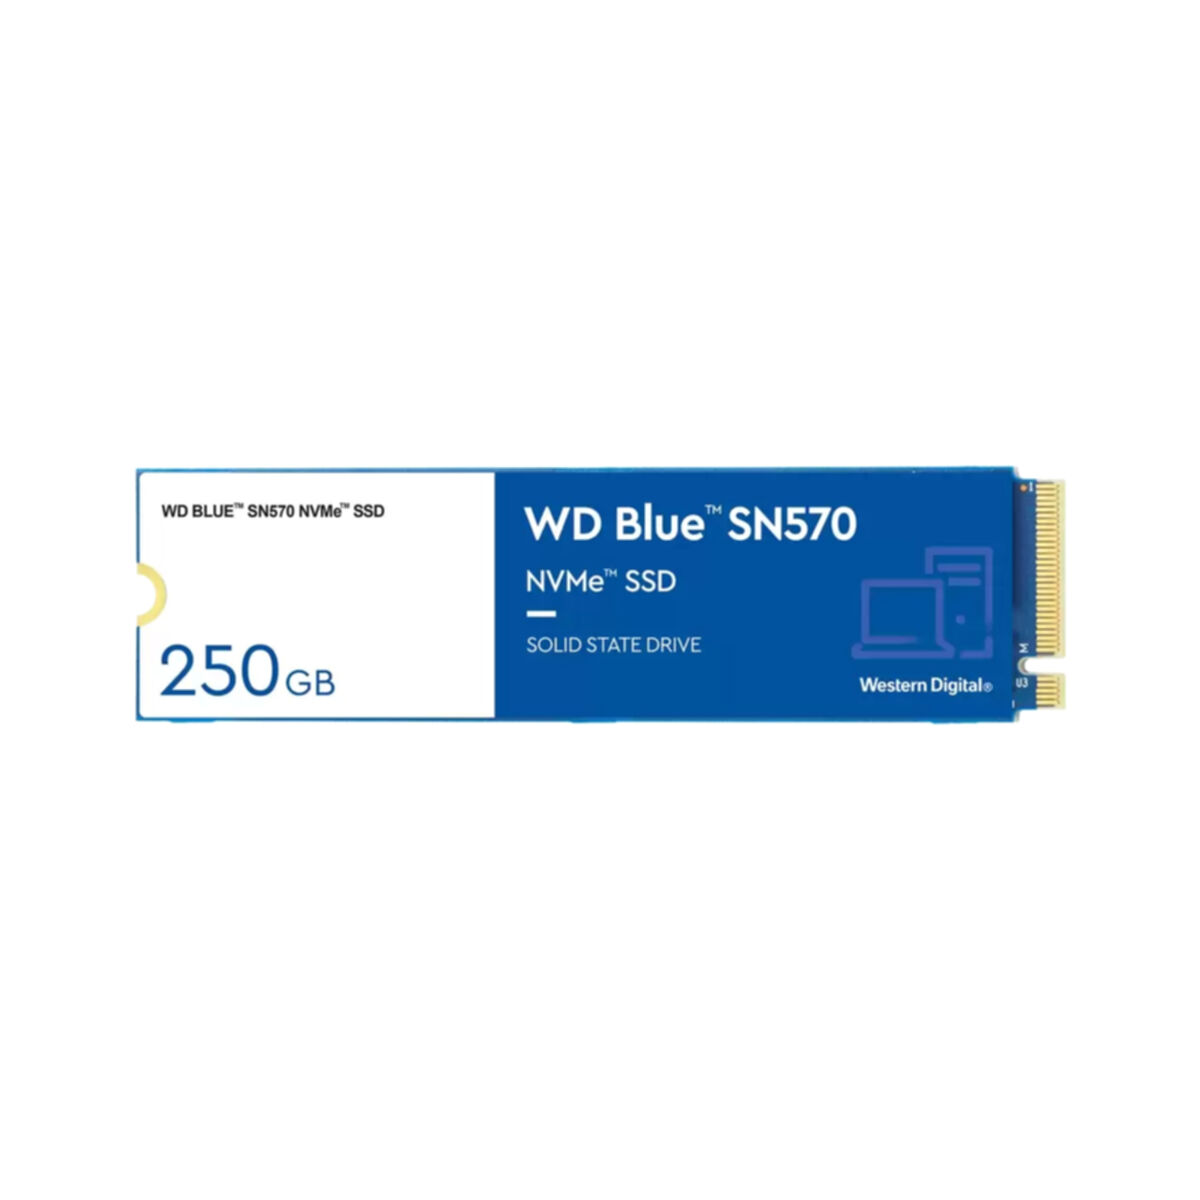 WD GB, intern 250 WESTERN SSD, SN570, Blue DIGITAL